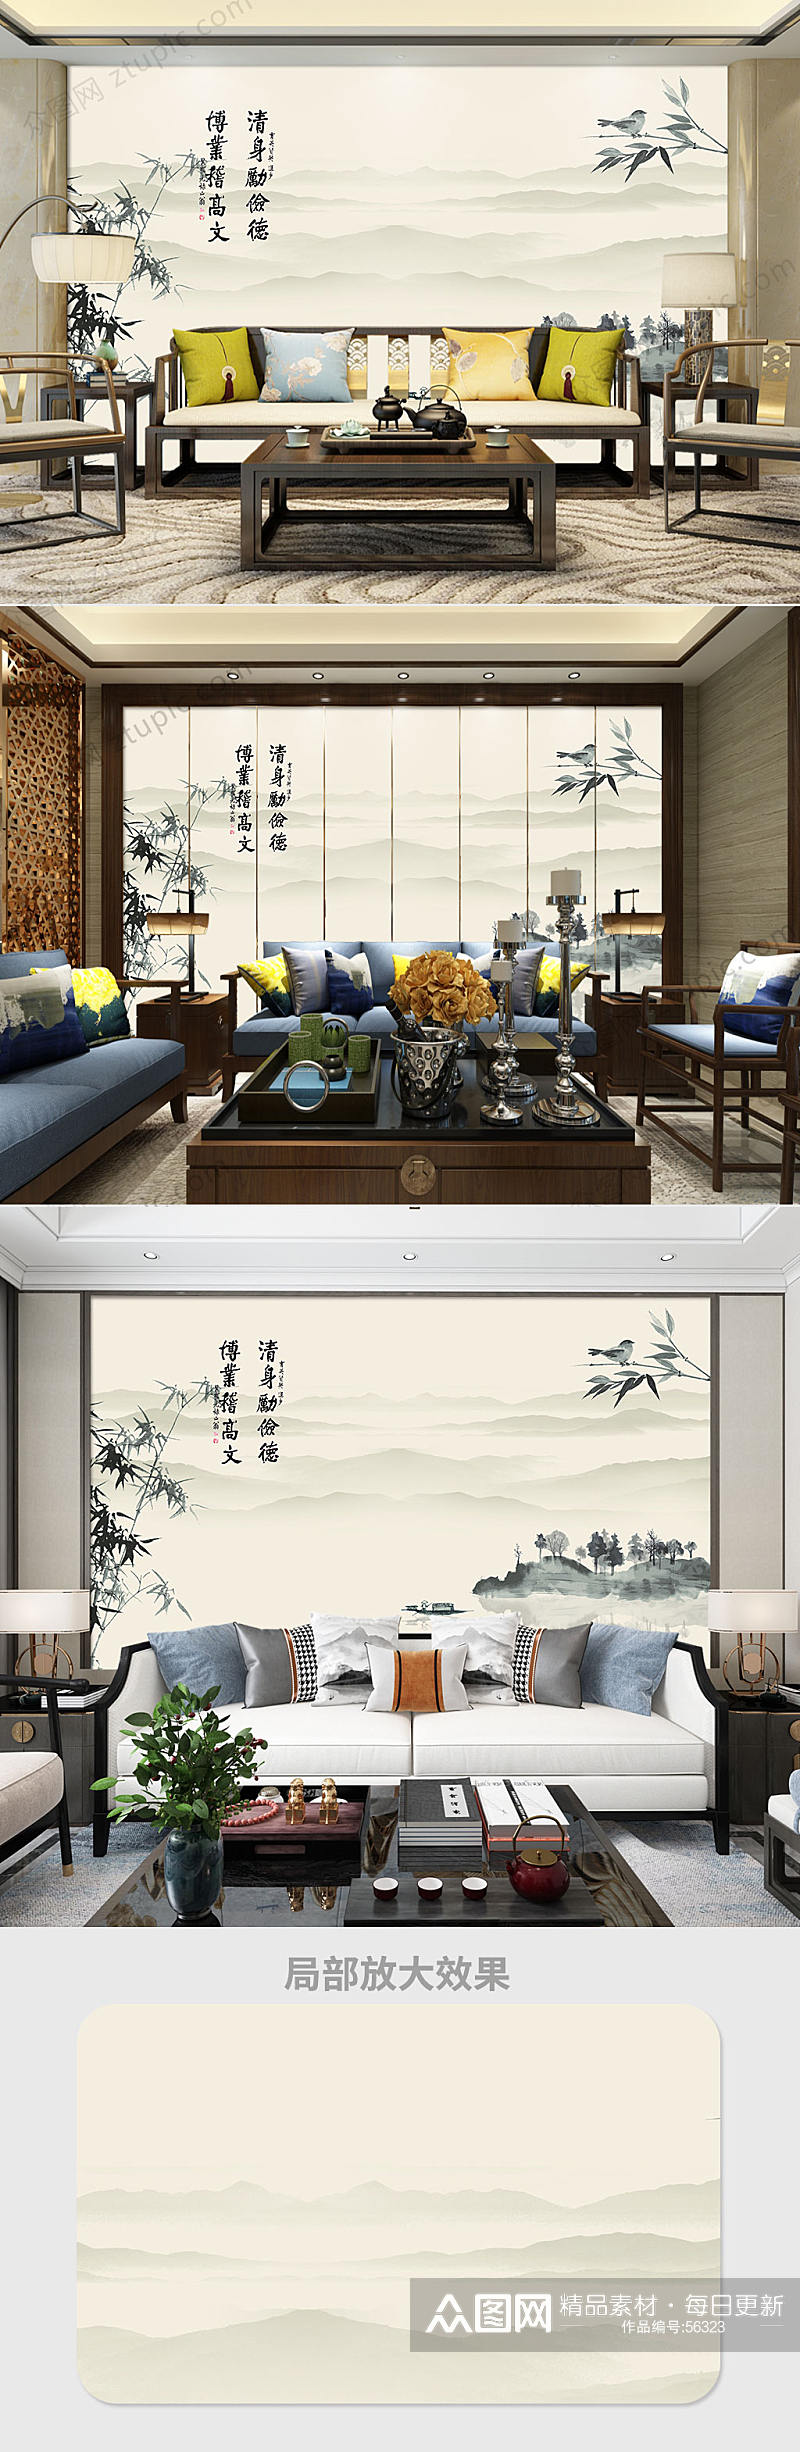 中国风水墨山水竹子背景墙素材